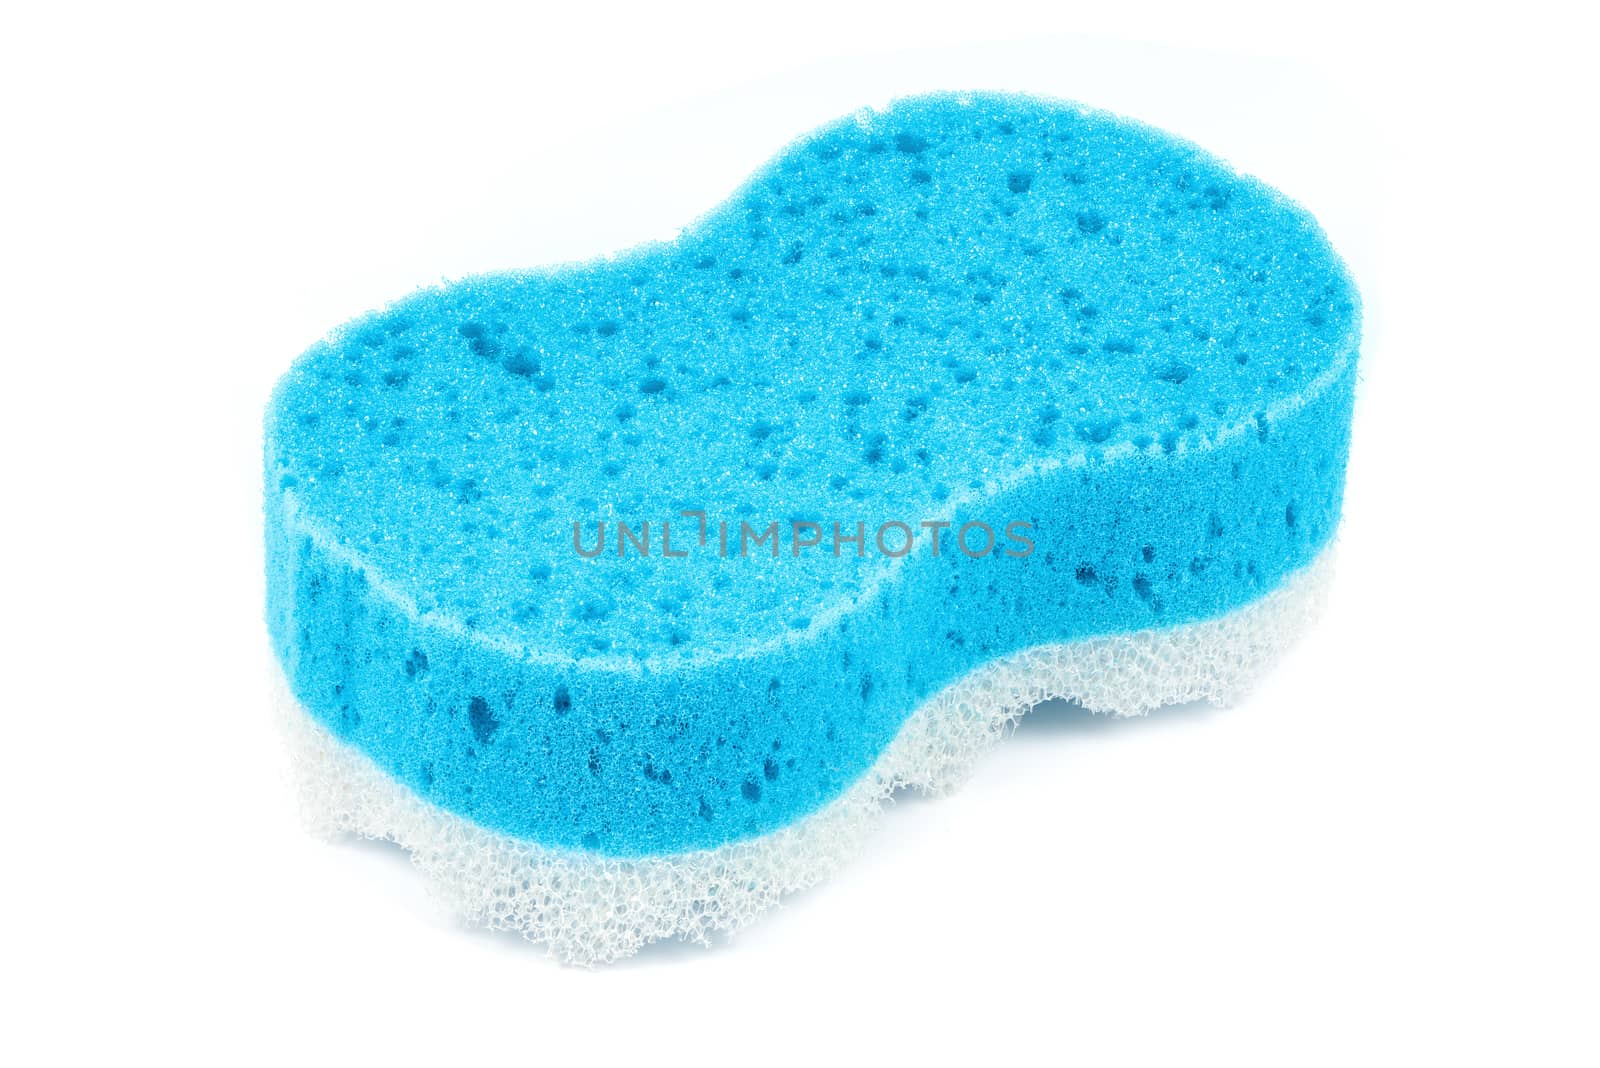 Blue bath massage sponge isolated on white background